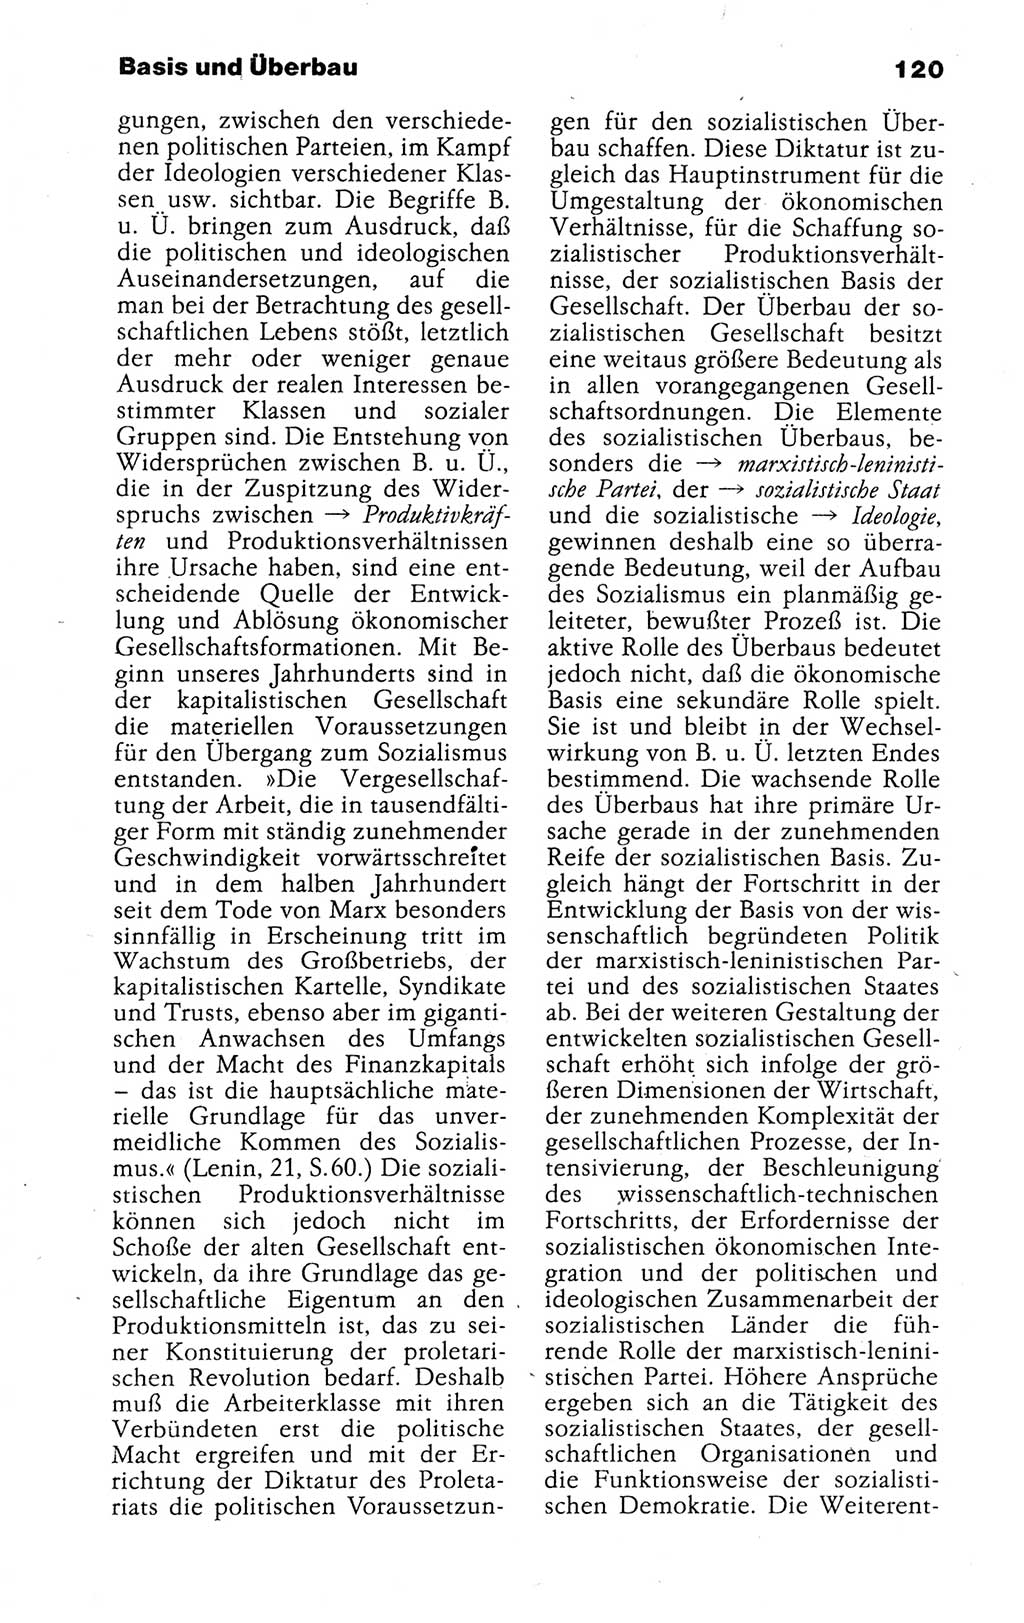 Kleines politisches Wörterbuch [Deutsche Demokratische Republik (DDR)] 1988, Seite 120 (Kl. pol. Wb. DDR 1988, S. 120)